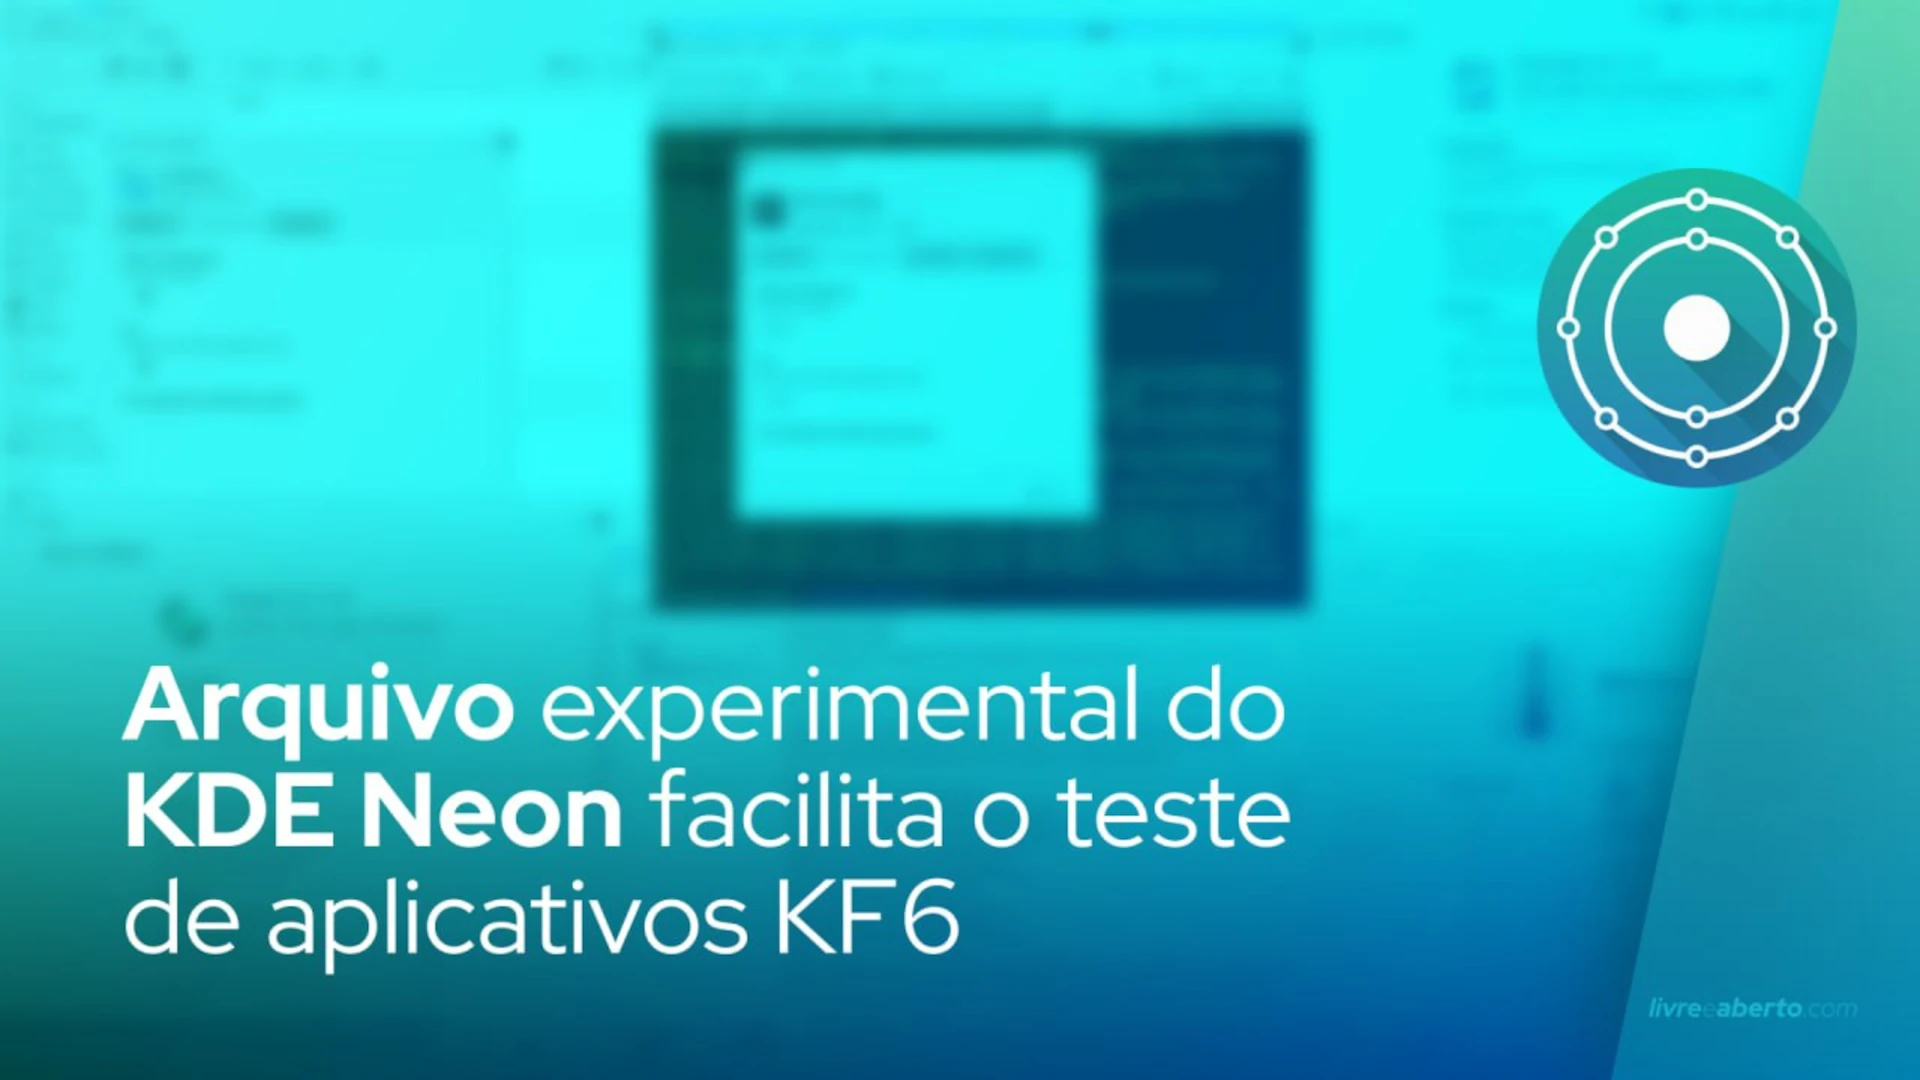 Arquivo experimental do KDE Neon facilita o teste de aplicativos KF6